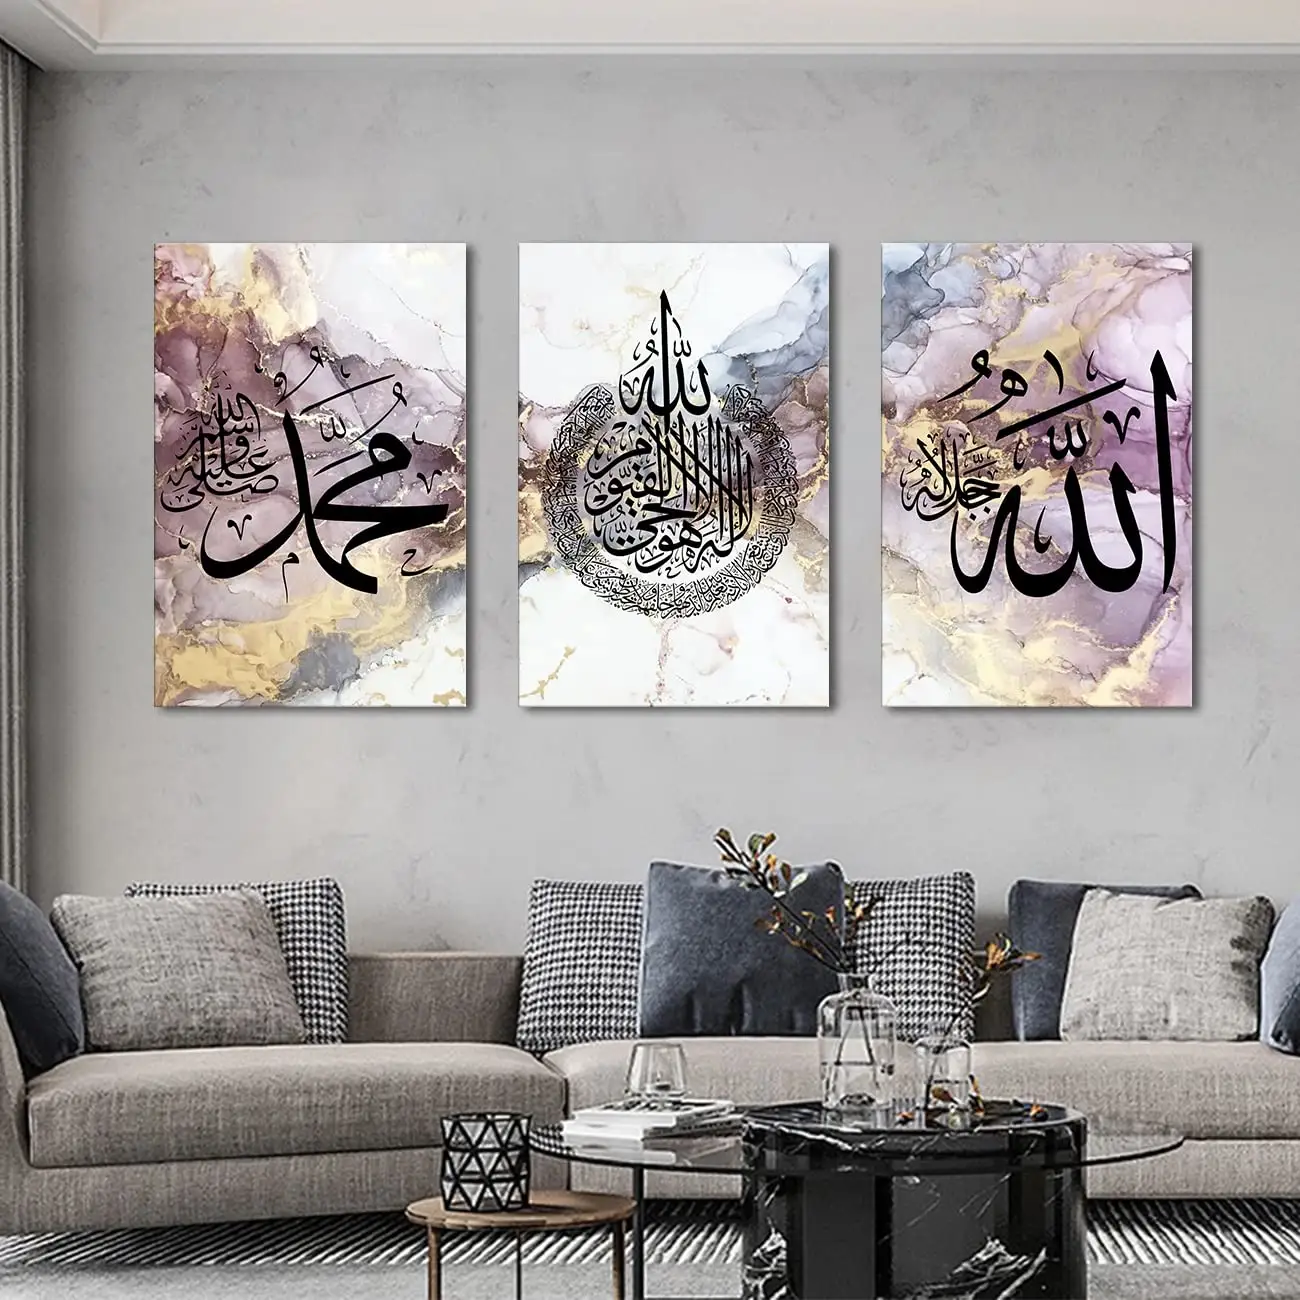 Seni dinding suci karbala kaligrafi Arab, seni dinding 3 buah untuk ruang tamu seni dinding dekorasi rumah mewah